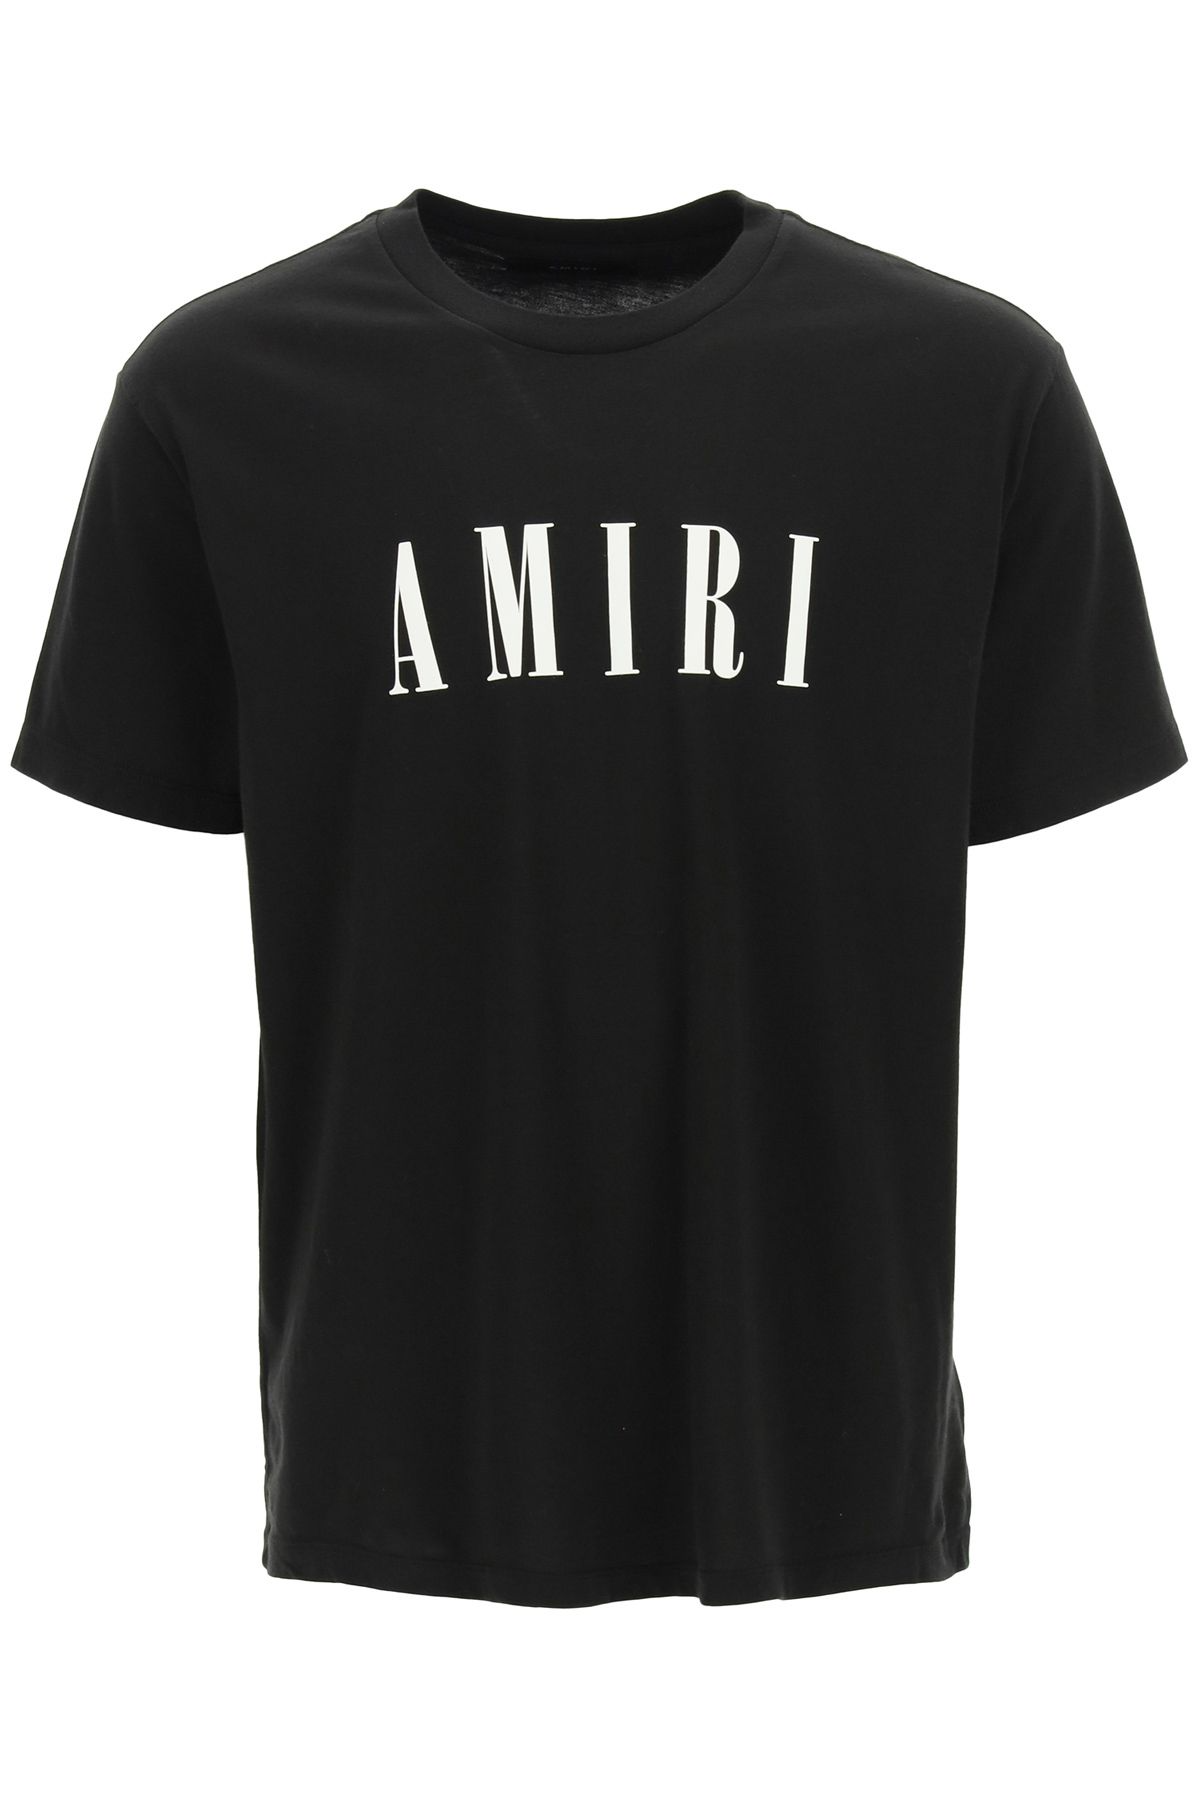 Amiri Logo T Shirt Black